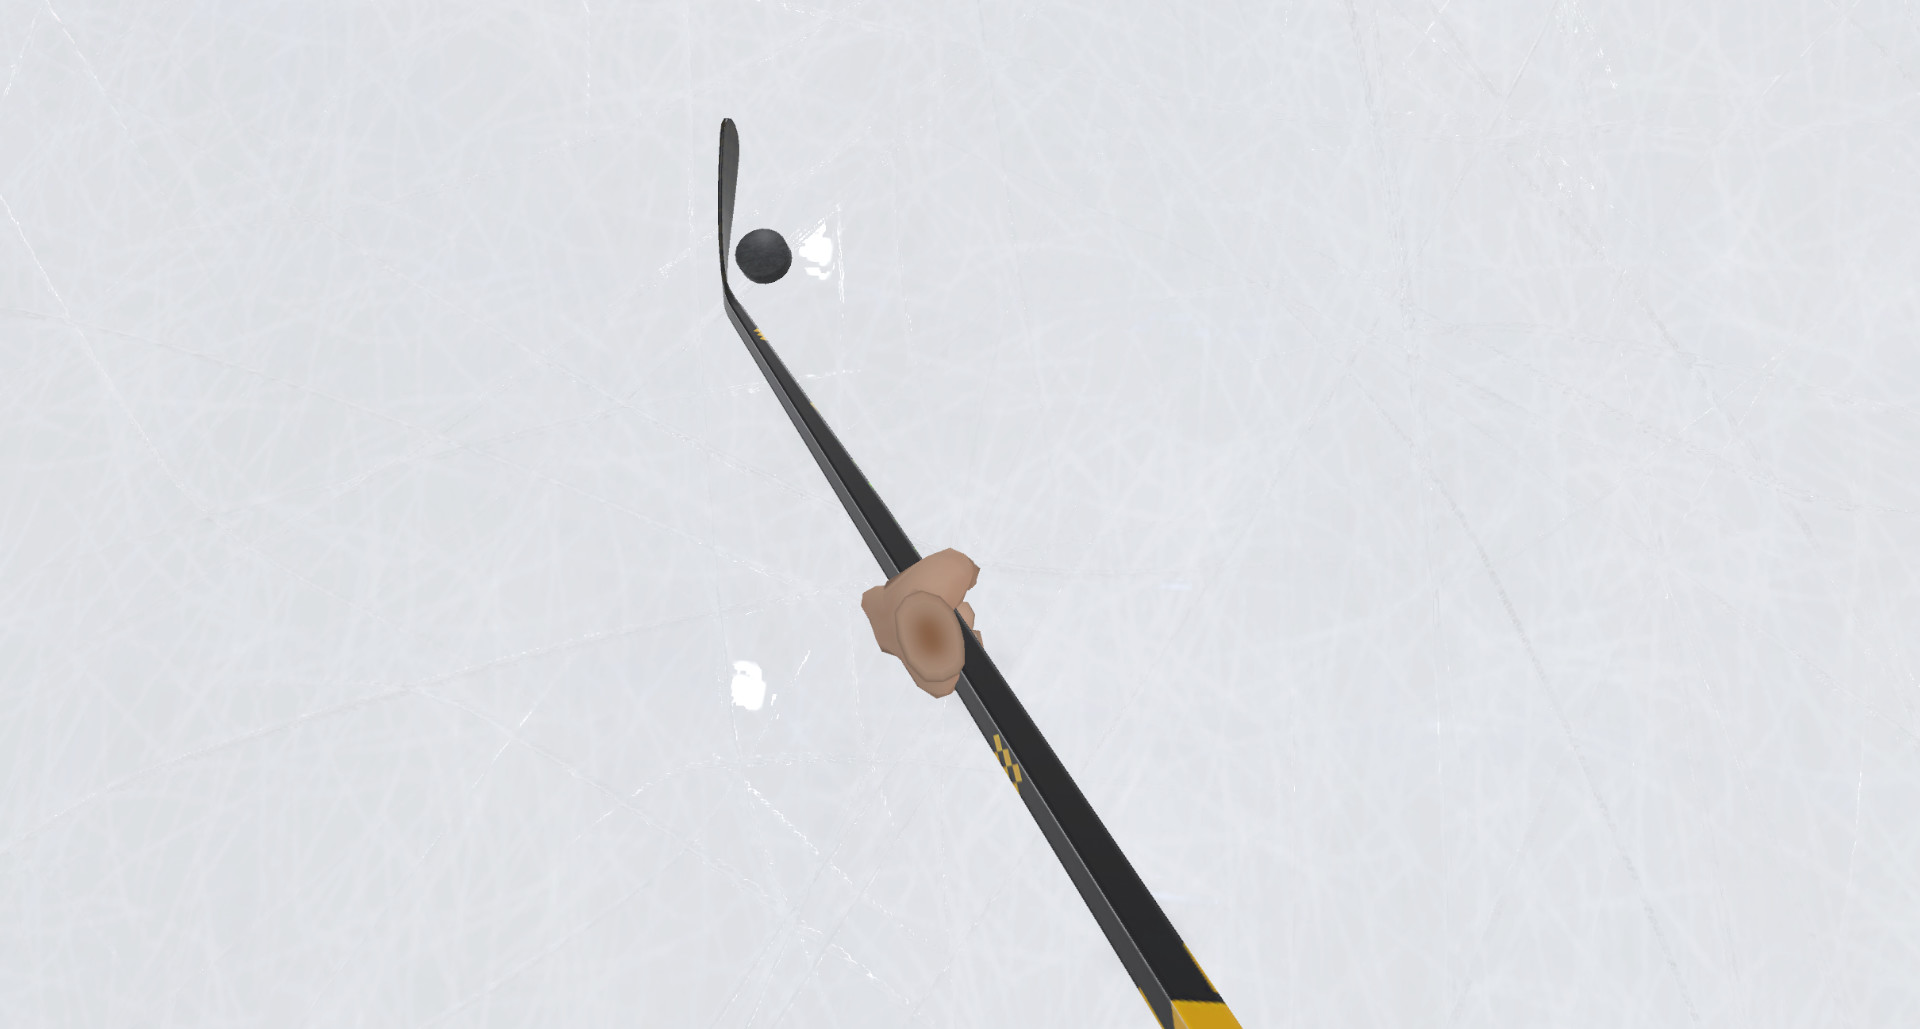 Oculus Quest 游戏《Pick-up League Hockey》冰球运动插图(2)